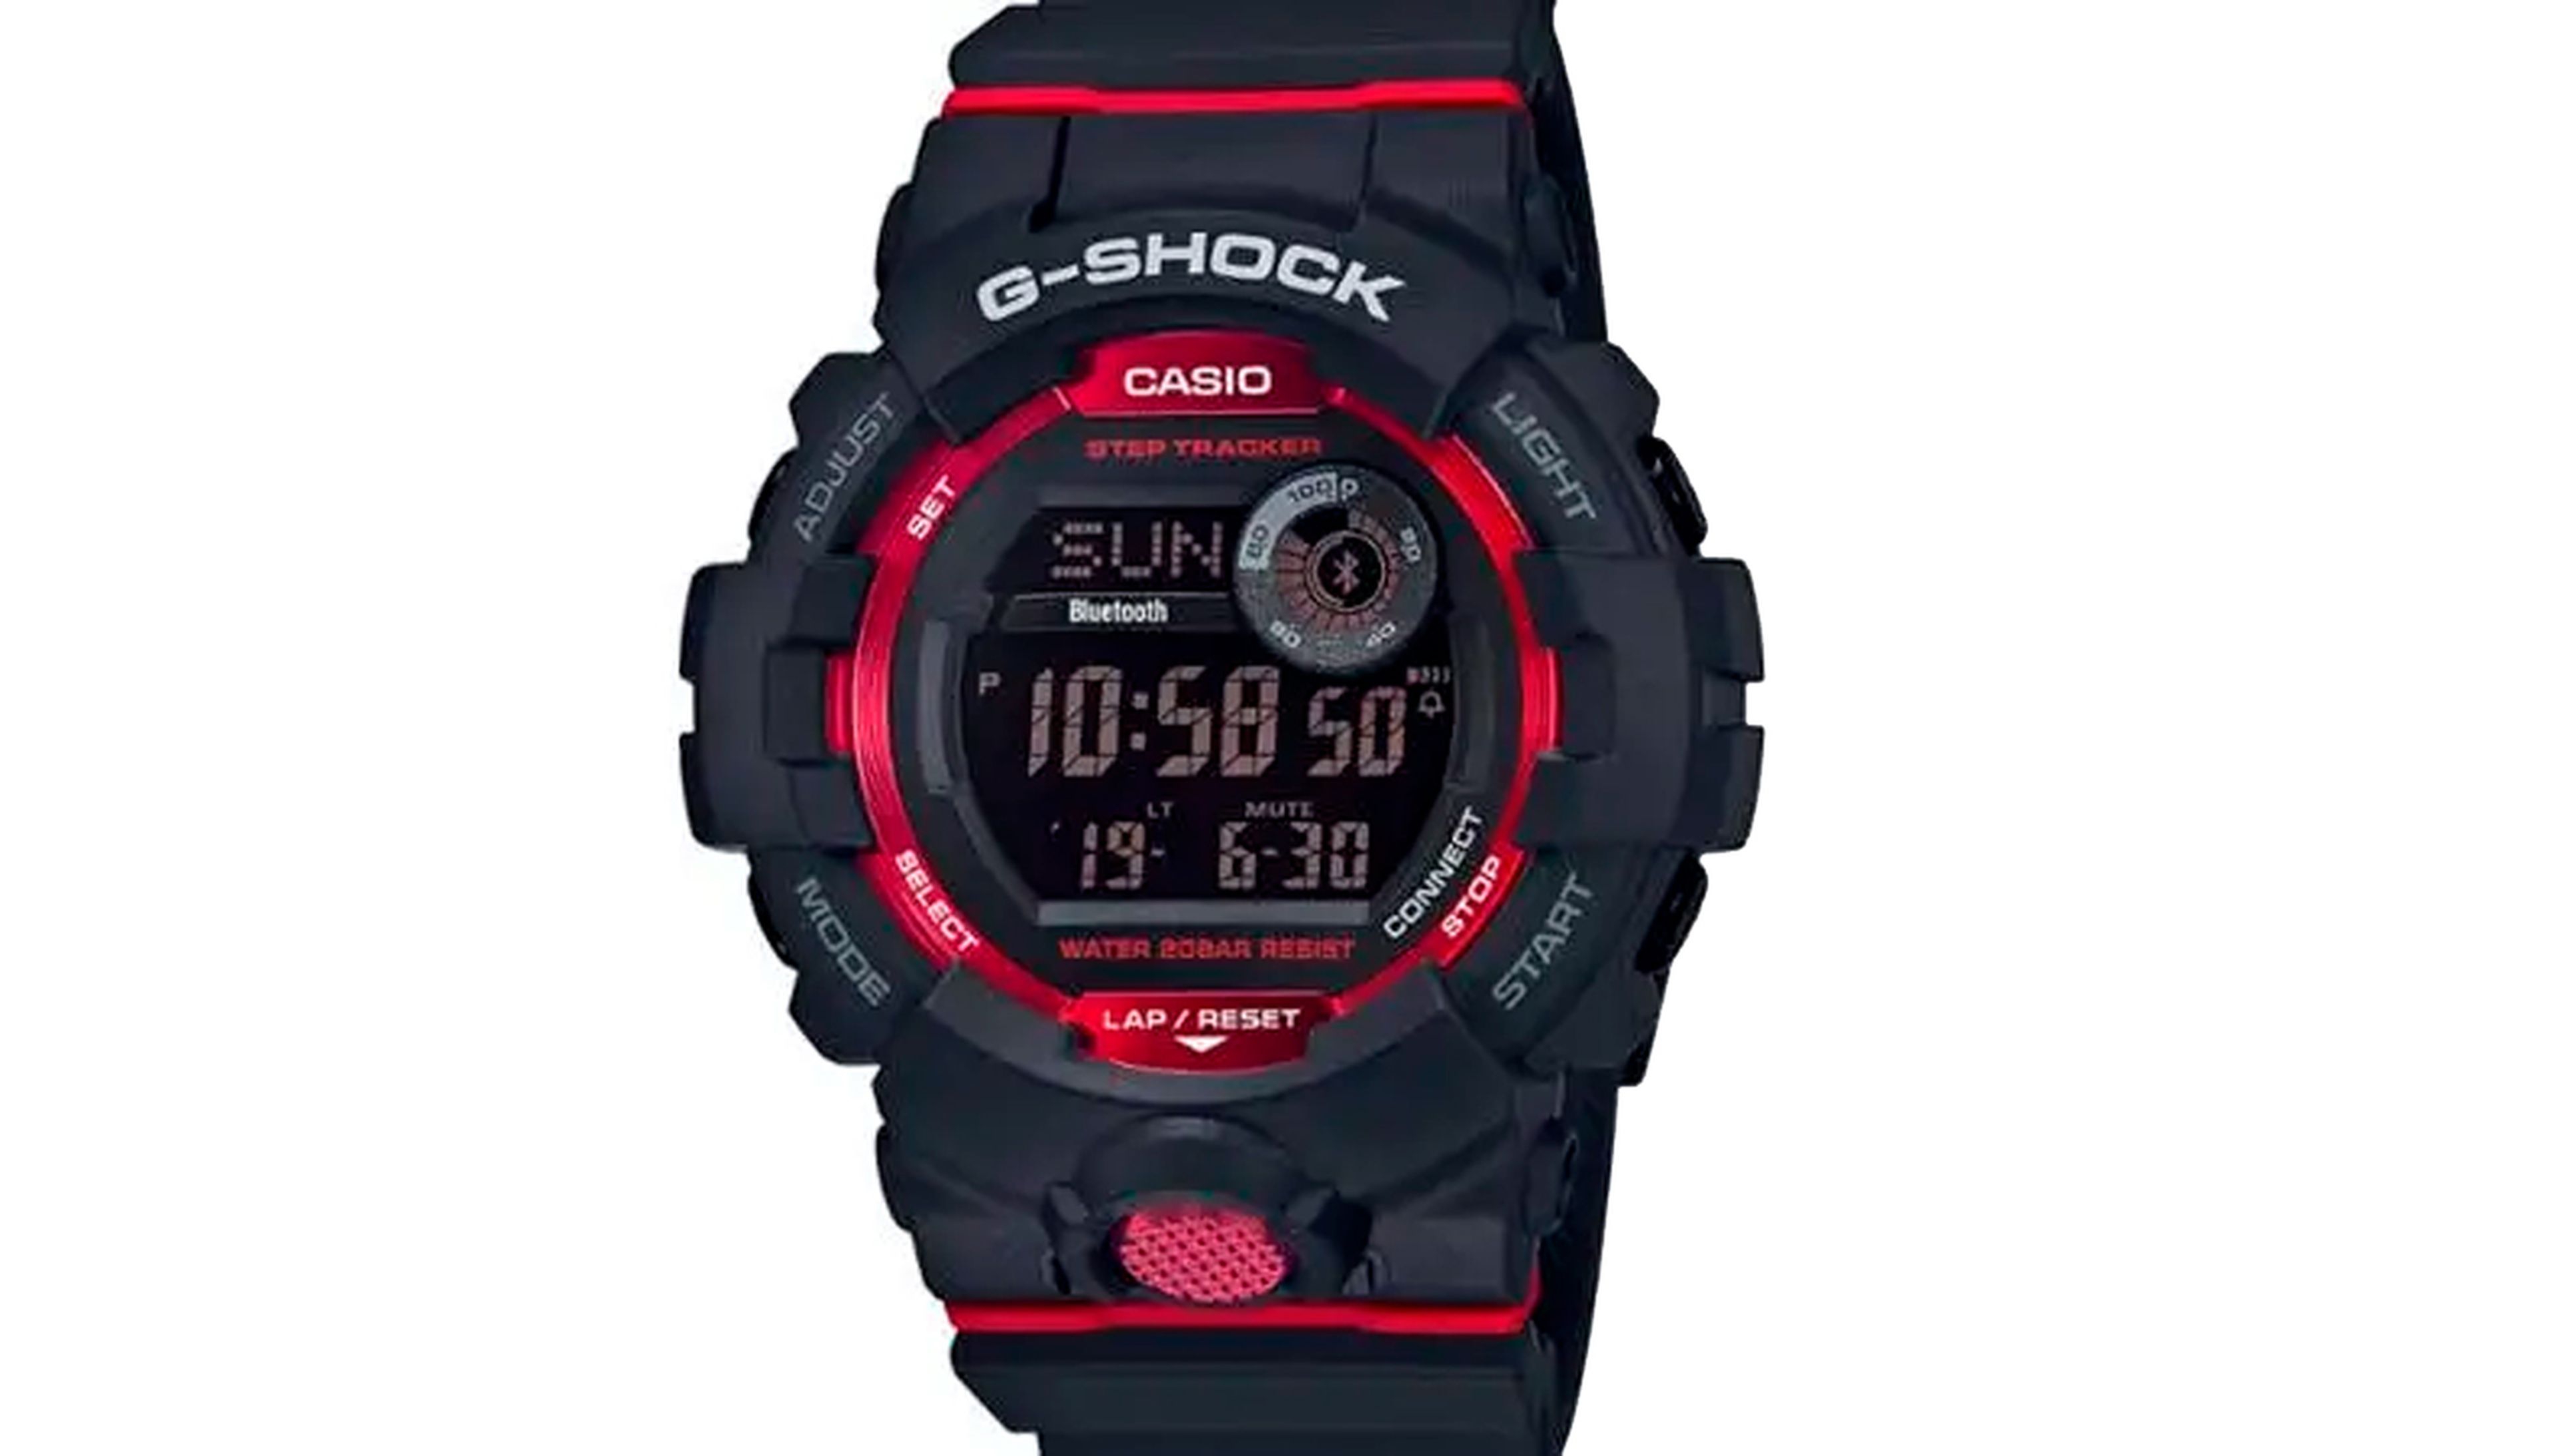 El G-Shock GBD800 de Casio tiene un precio de 110 dólares, unos 100 euros, en la web de Casio.